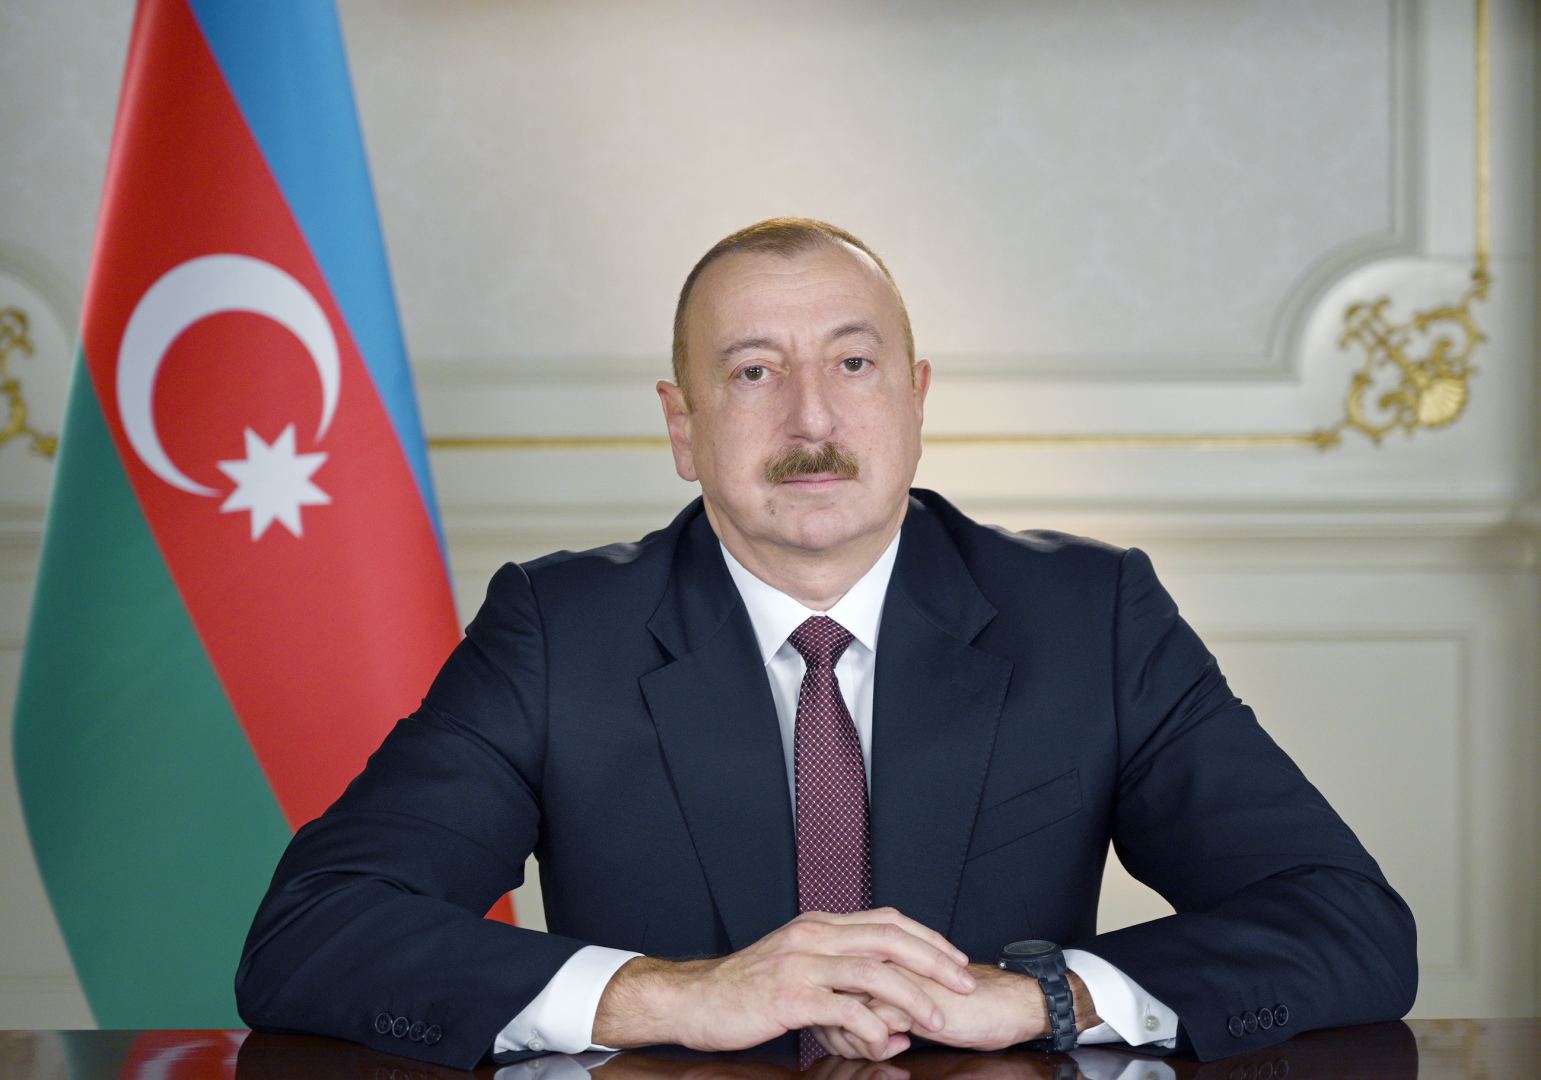 Azərbaycan Prezidenti: “Böyük sevinc hissi ilə bildirirəm ki, Laçın rayonu işğaldan azad olunub”